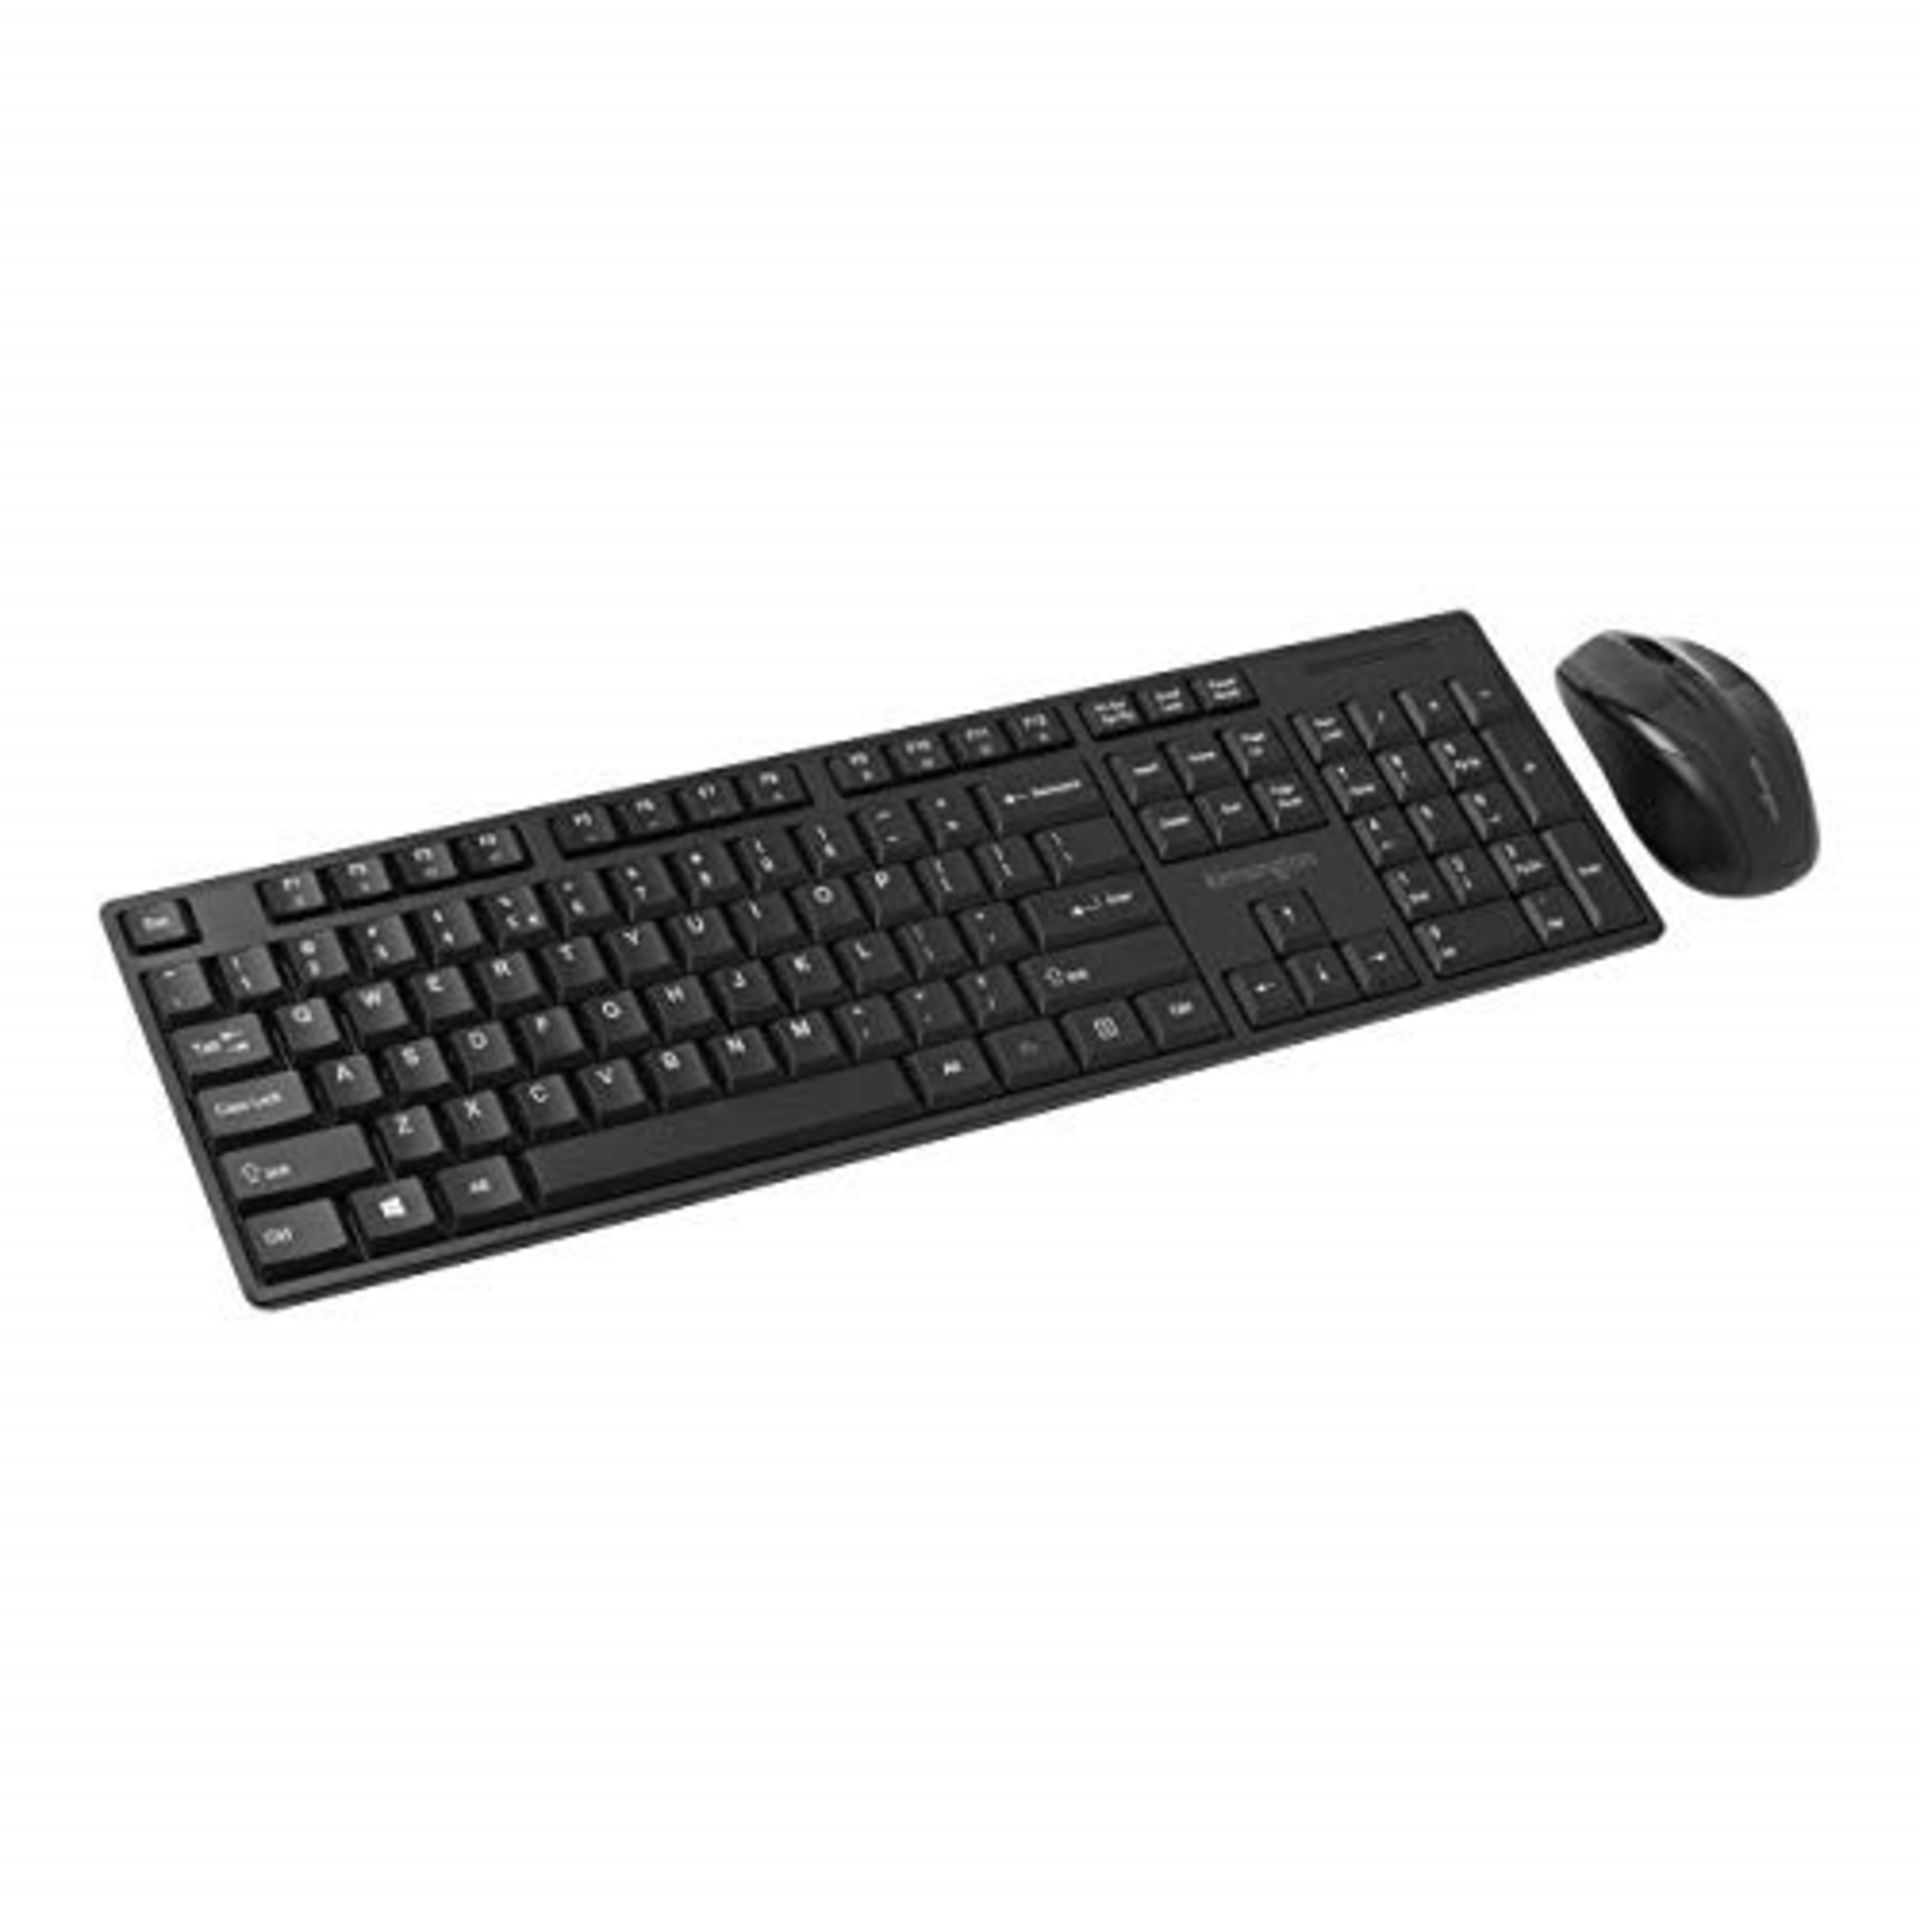 Kensington Pro Fit Low-Profile Wireless Keyboard and Mouse Set Desktop, Multimedia Key